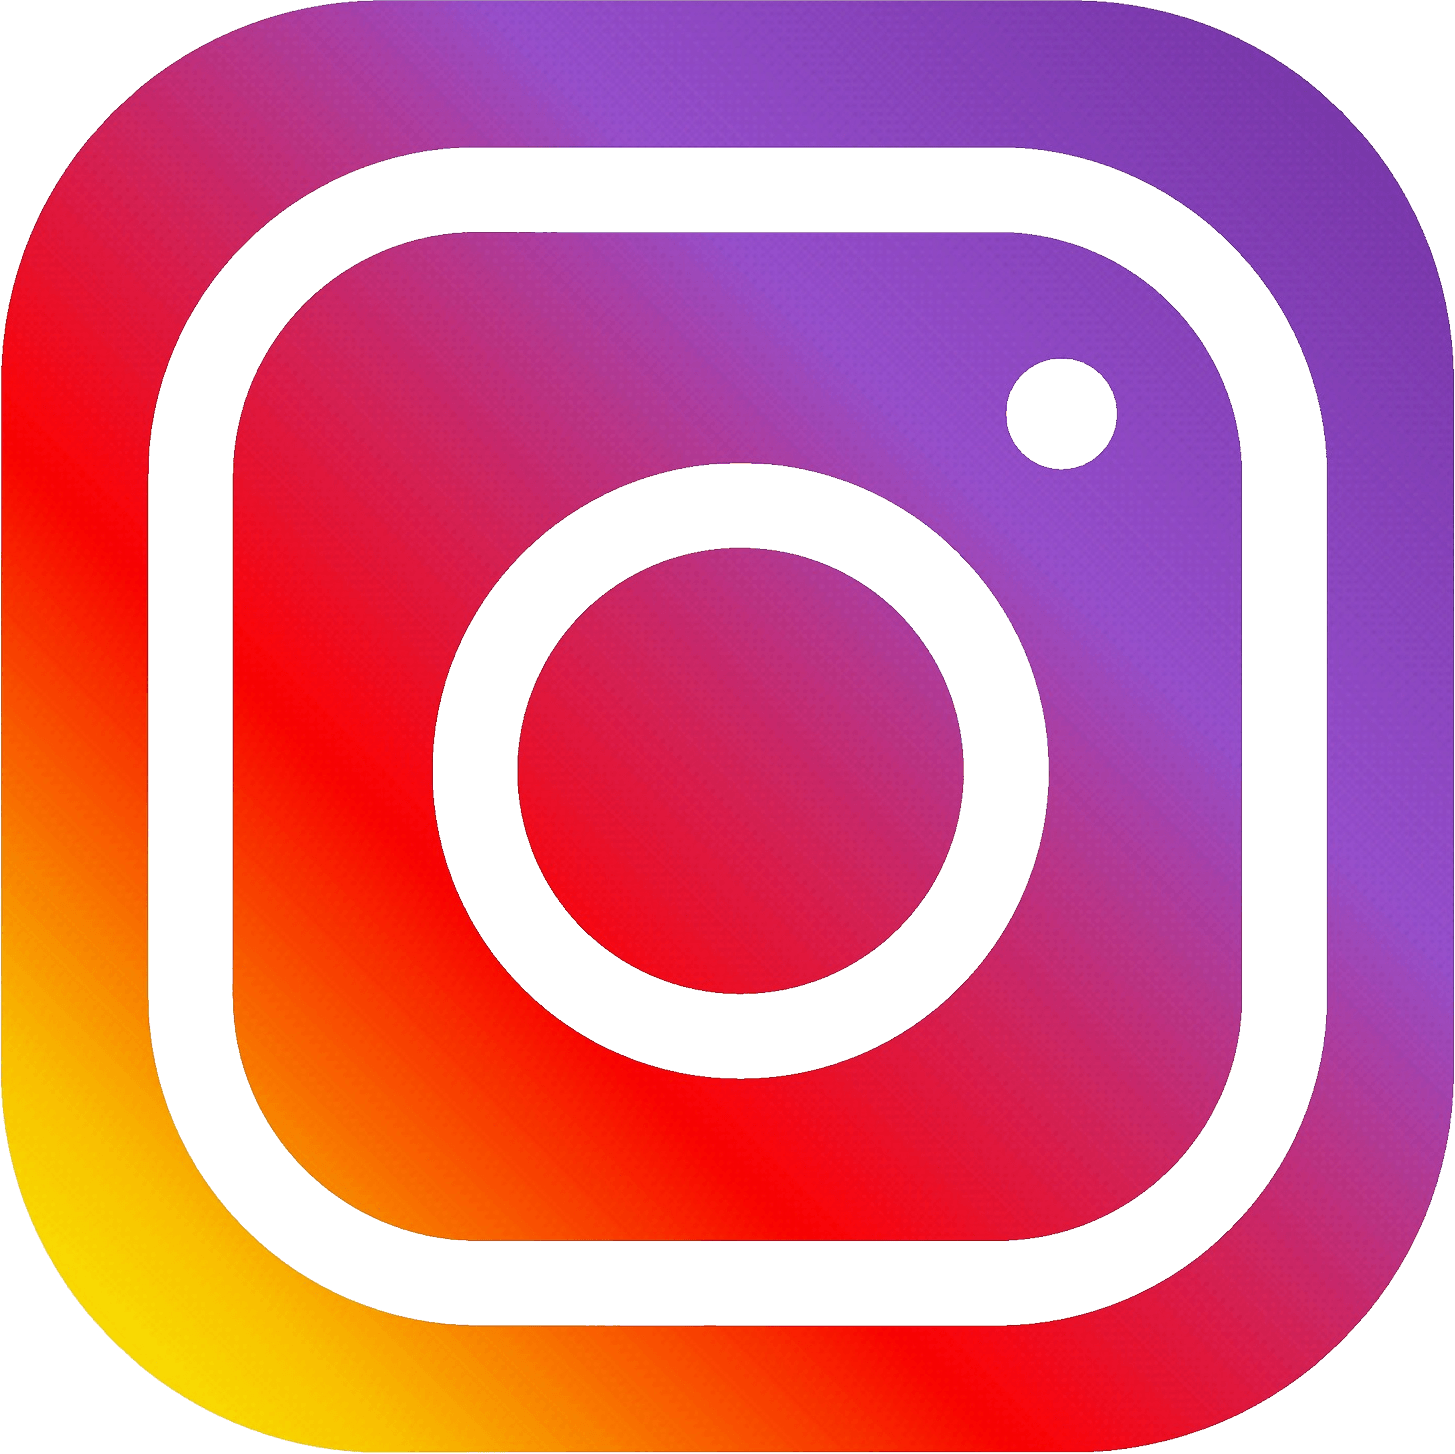 Instrgram Logo - HQ Instagram PNG Transparent Instagram.PNG Images. | PlusPNG